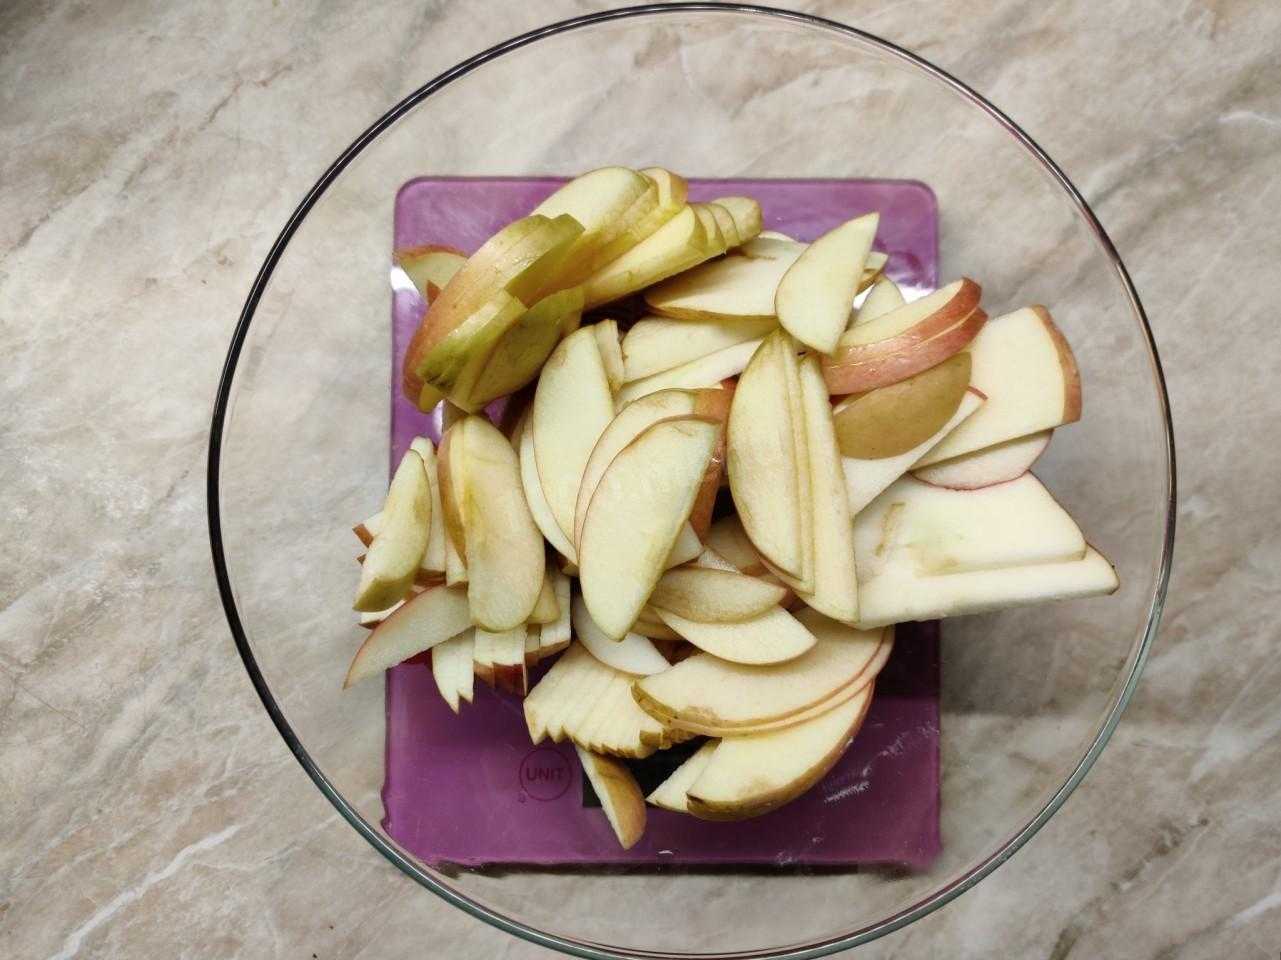 Как сварить варенье из яблок. 5 пошаговых рецептов | народные знания от кравченко анатолия